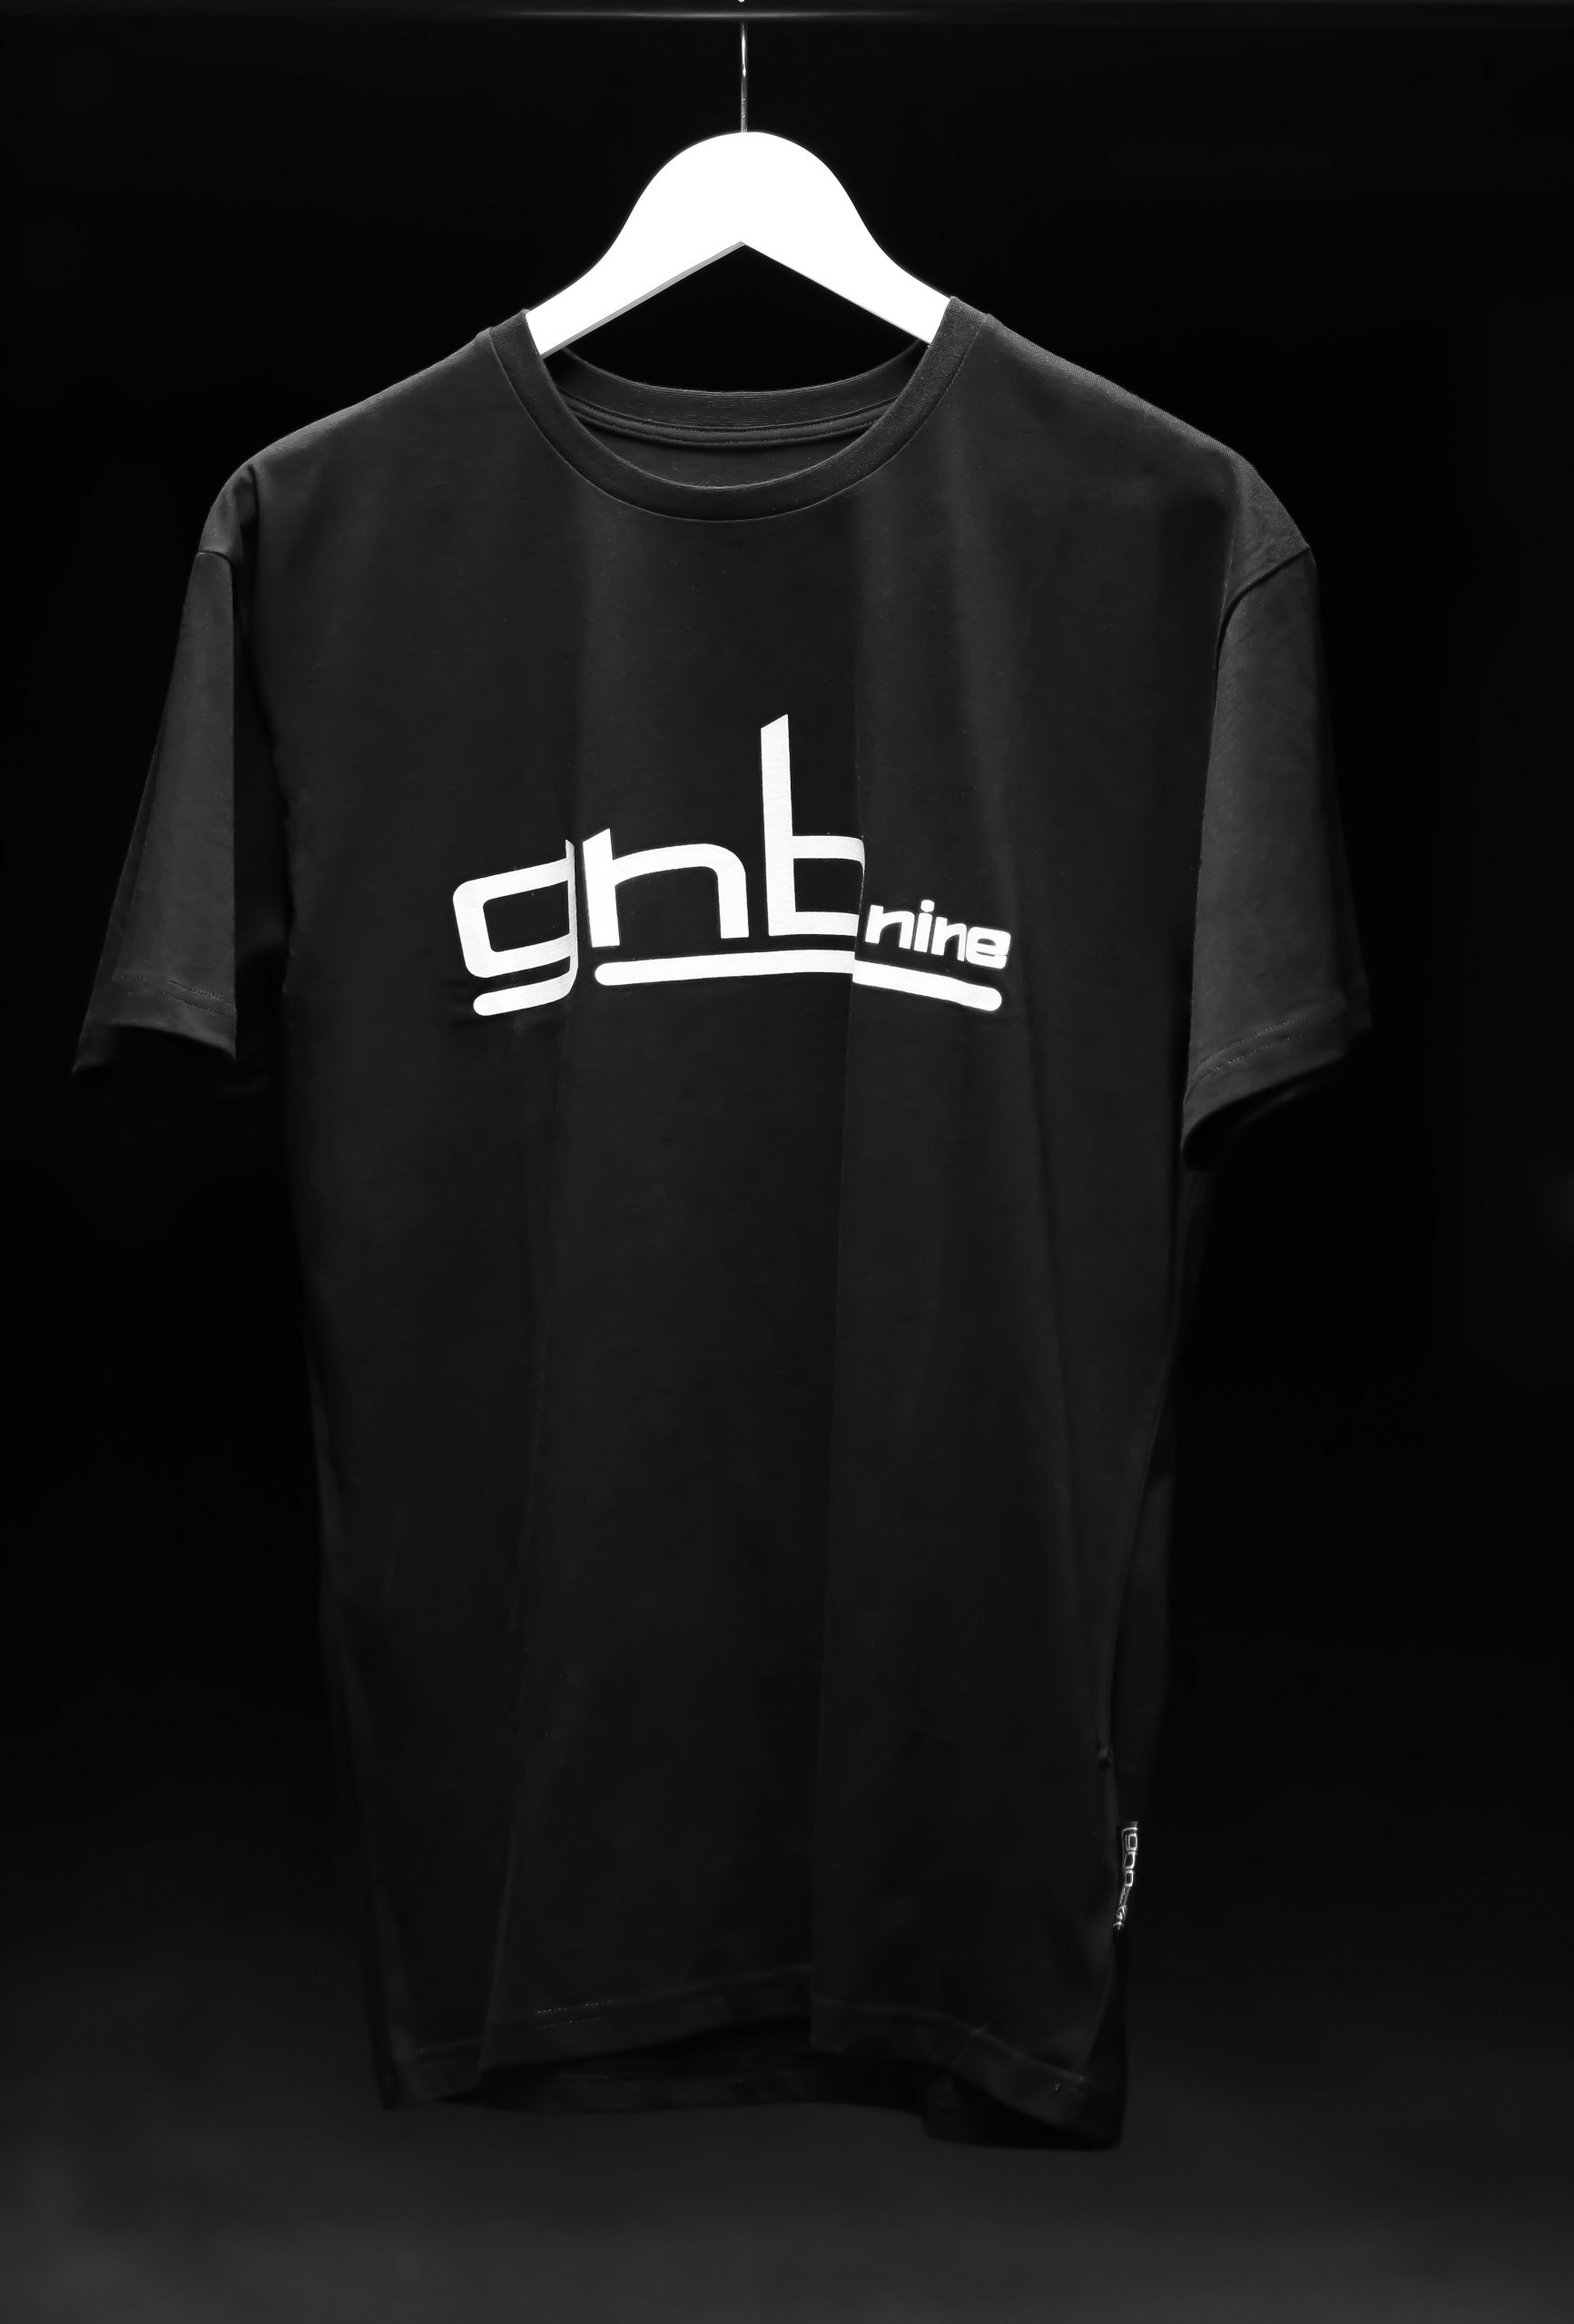 Černé tričko GnBnine Maverick